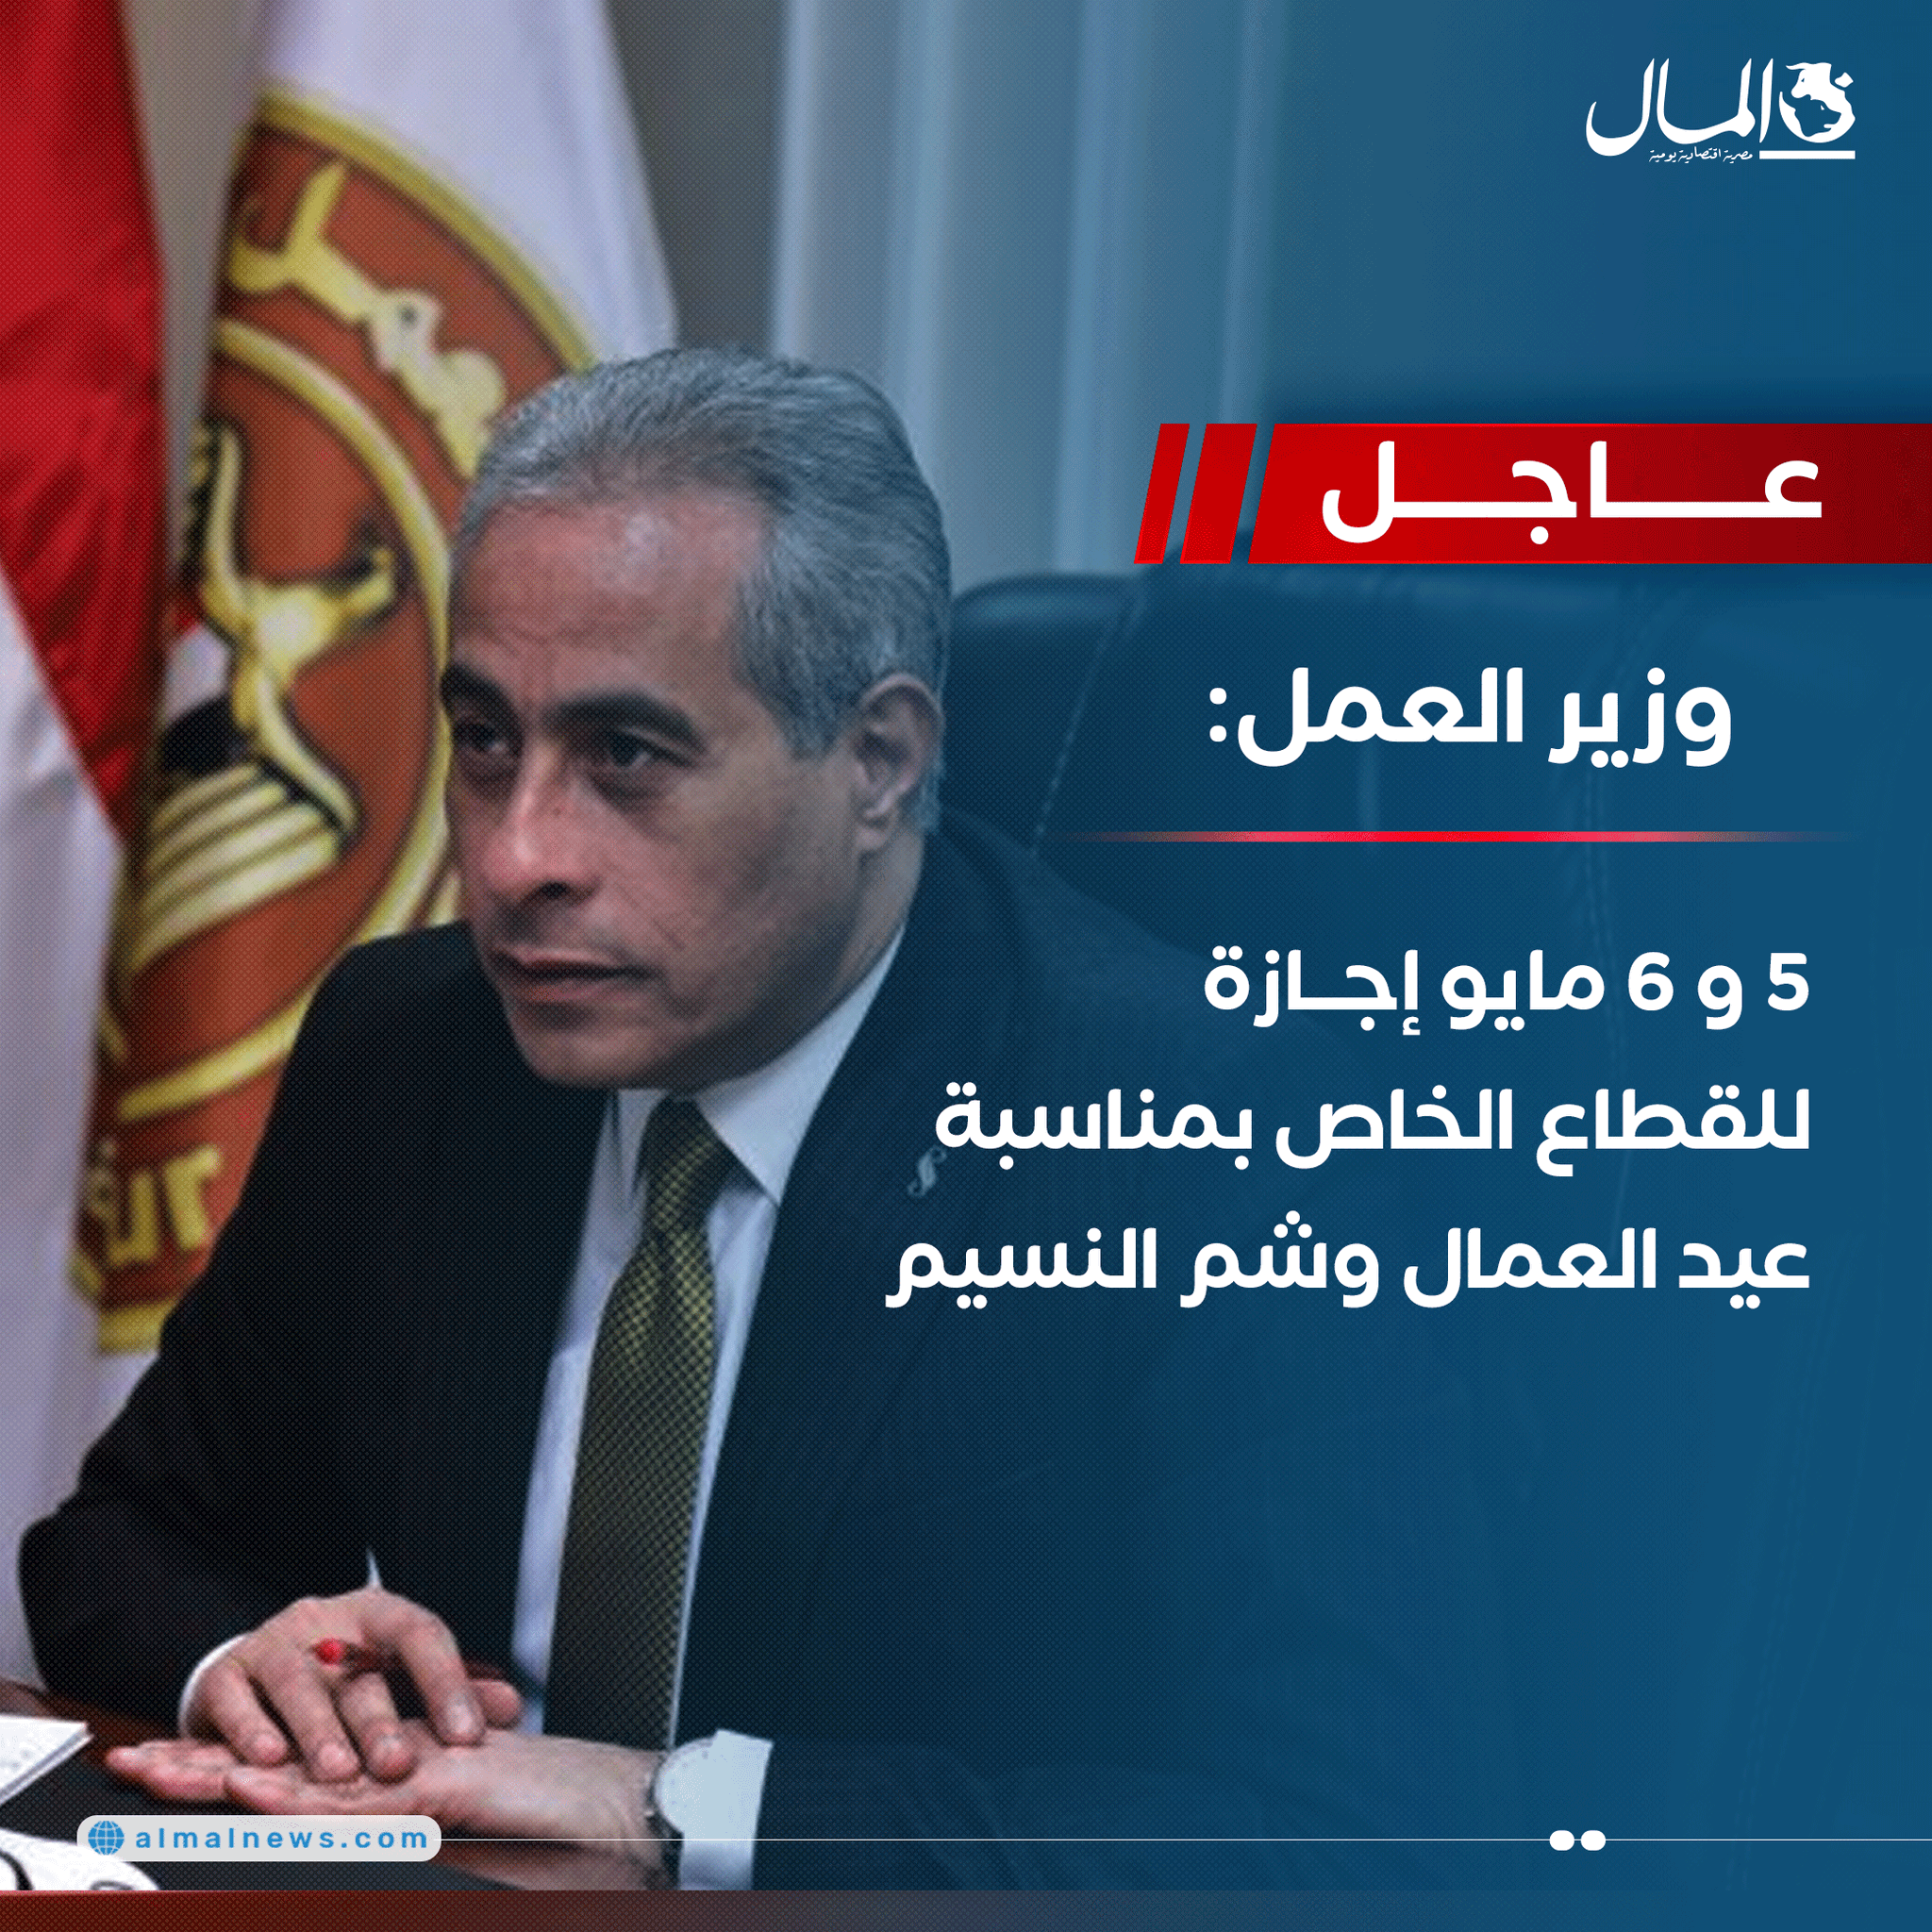 عاجل..وزير العمل: 5 و 6 مايو إجازة للقطاع الخاص بمناسبة عيد العمال وشم النسيم 